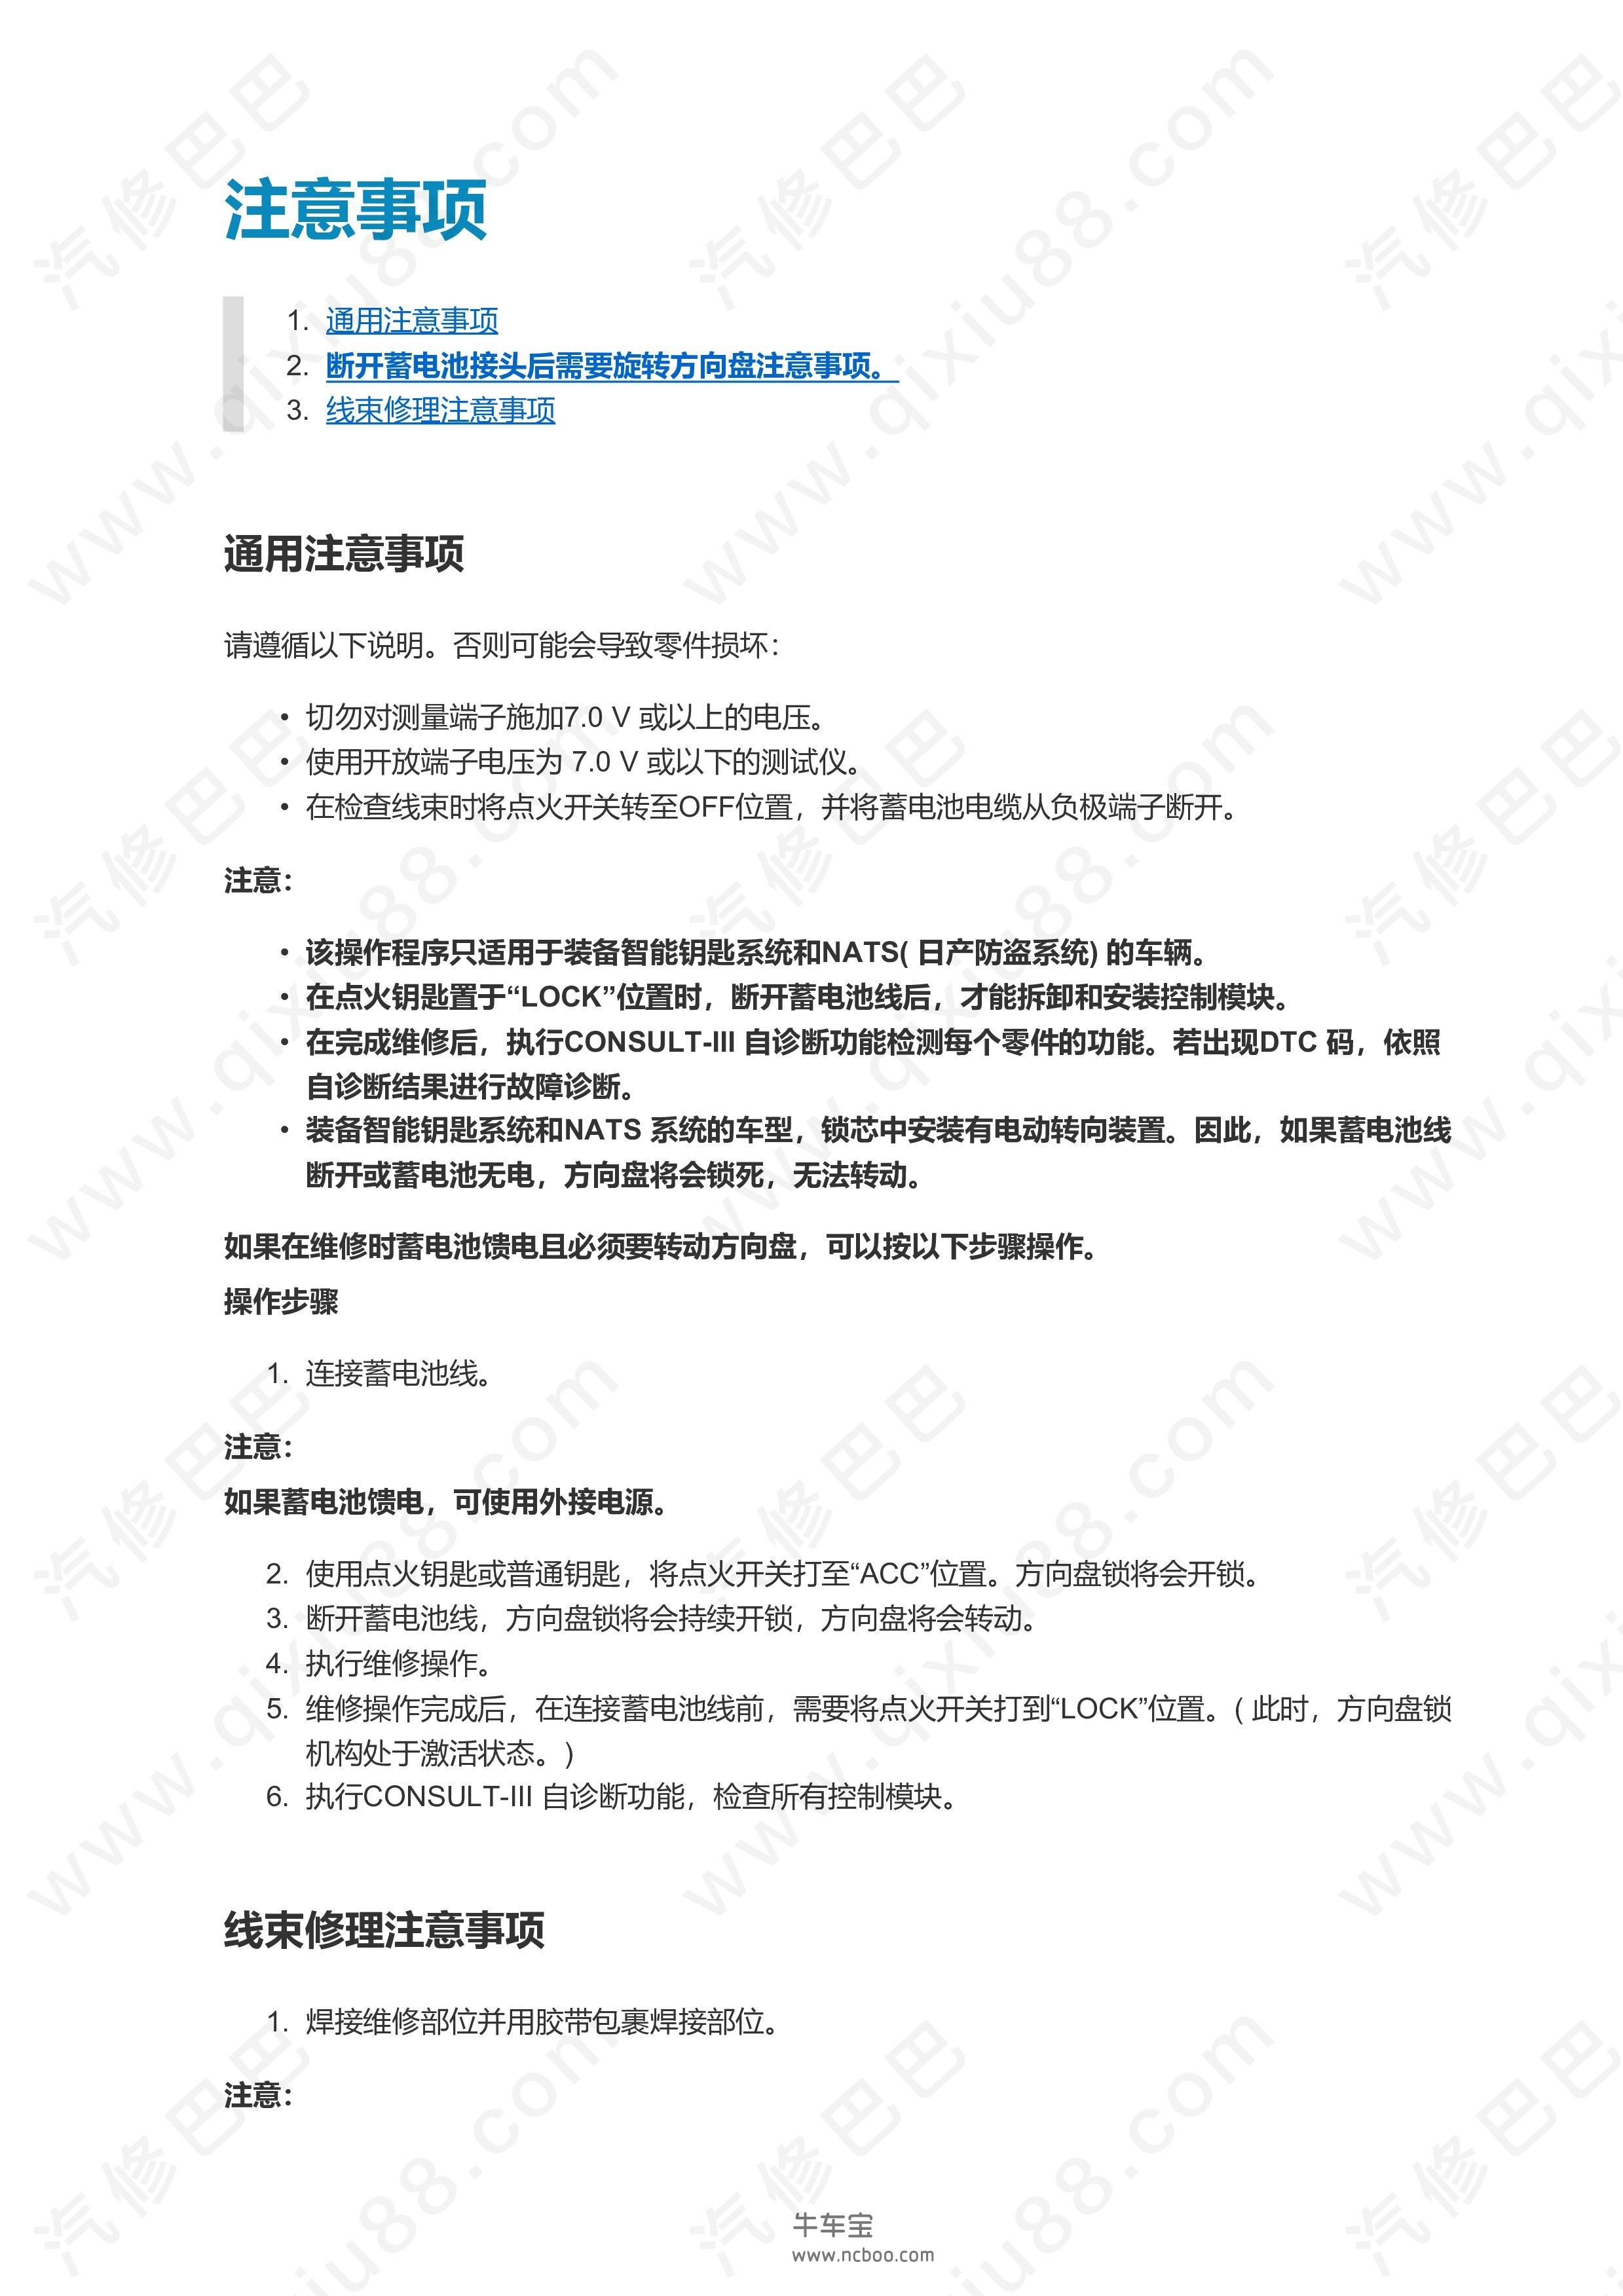 郑州日产东风帅客LAN系统 CAN通信系统维修手册